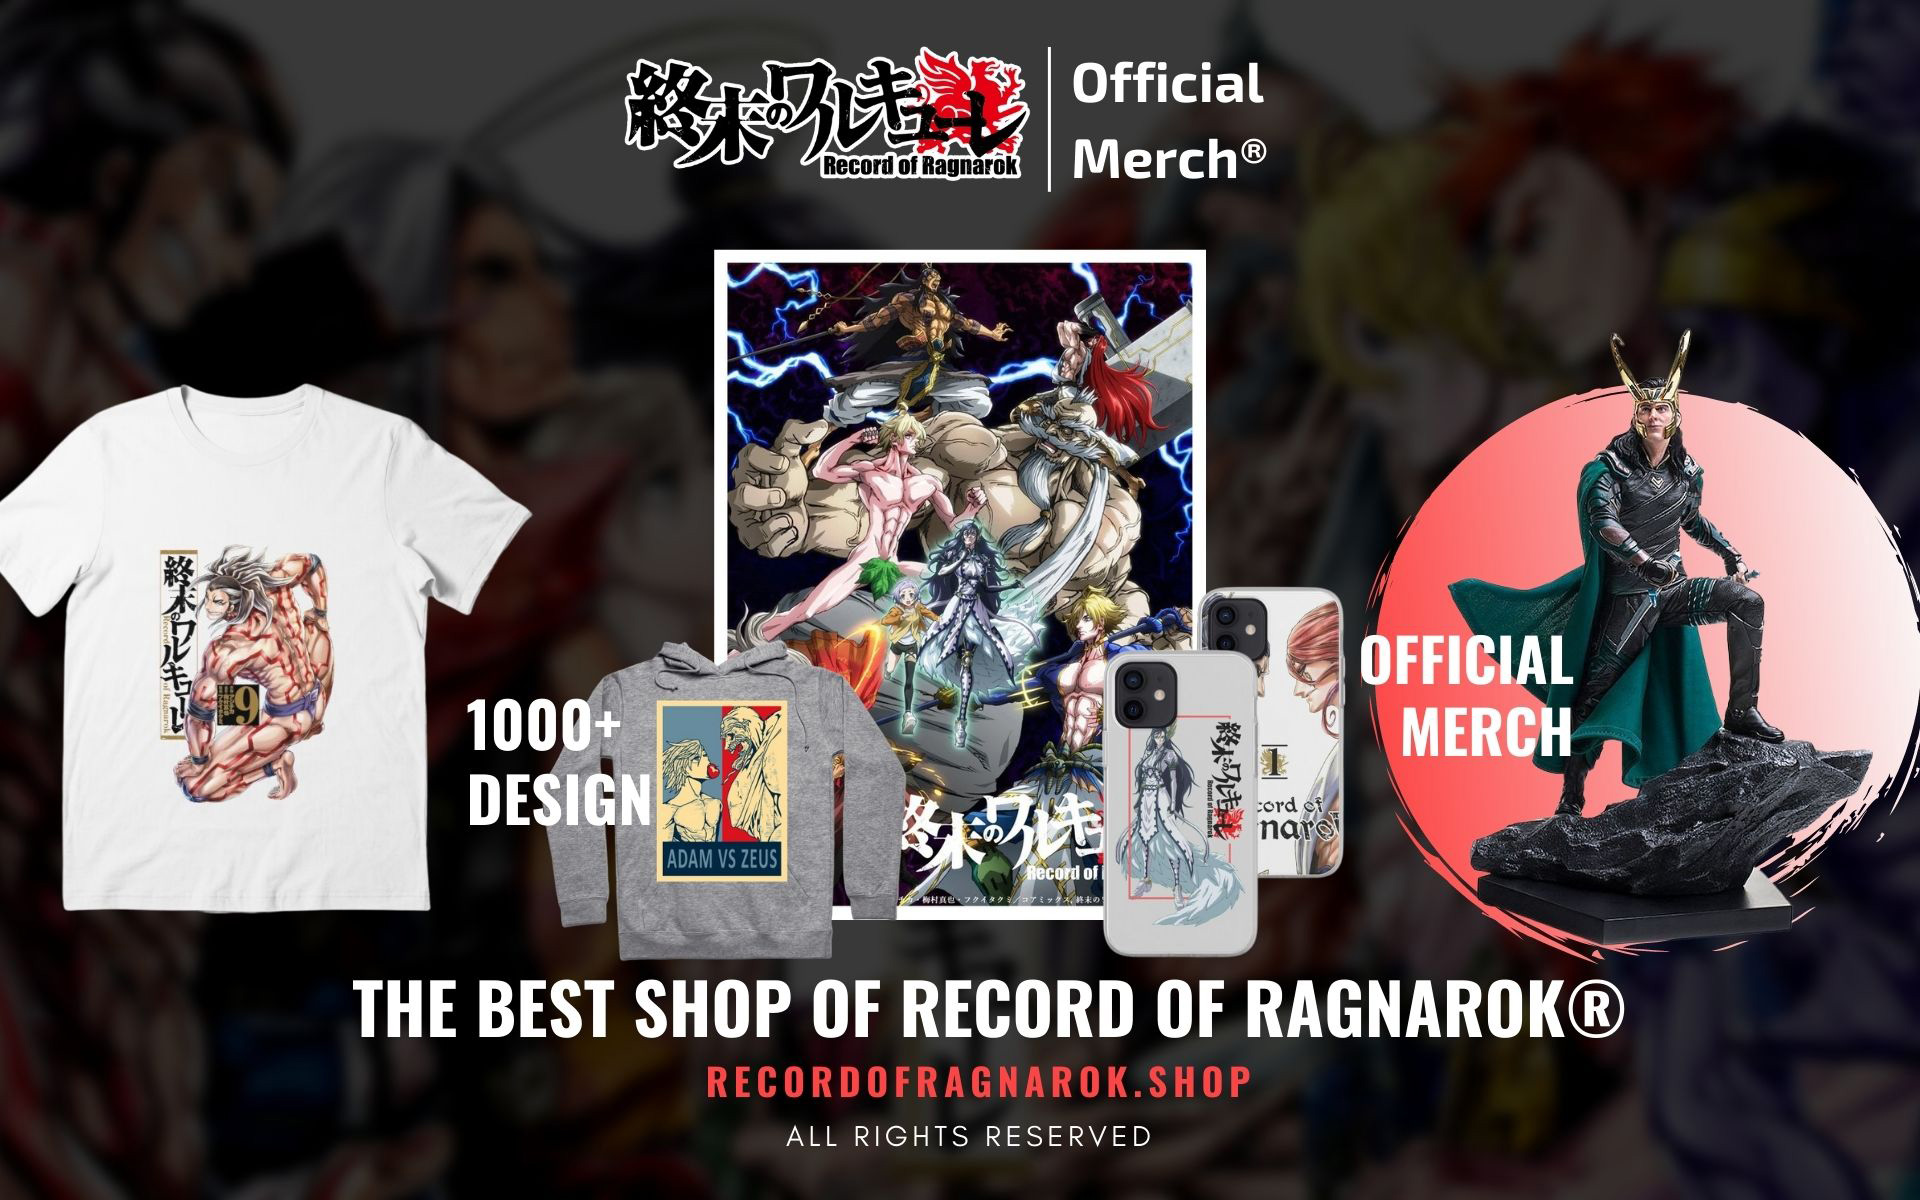 Record Of Ragnarok Shop Web Banner - Record Of Ragnarok Shop